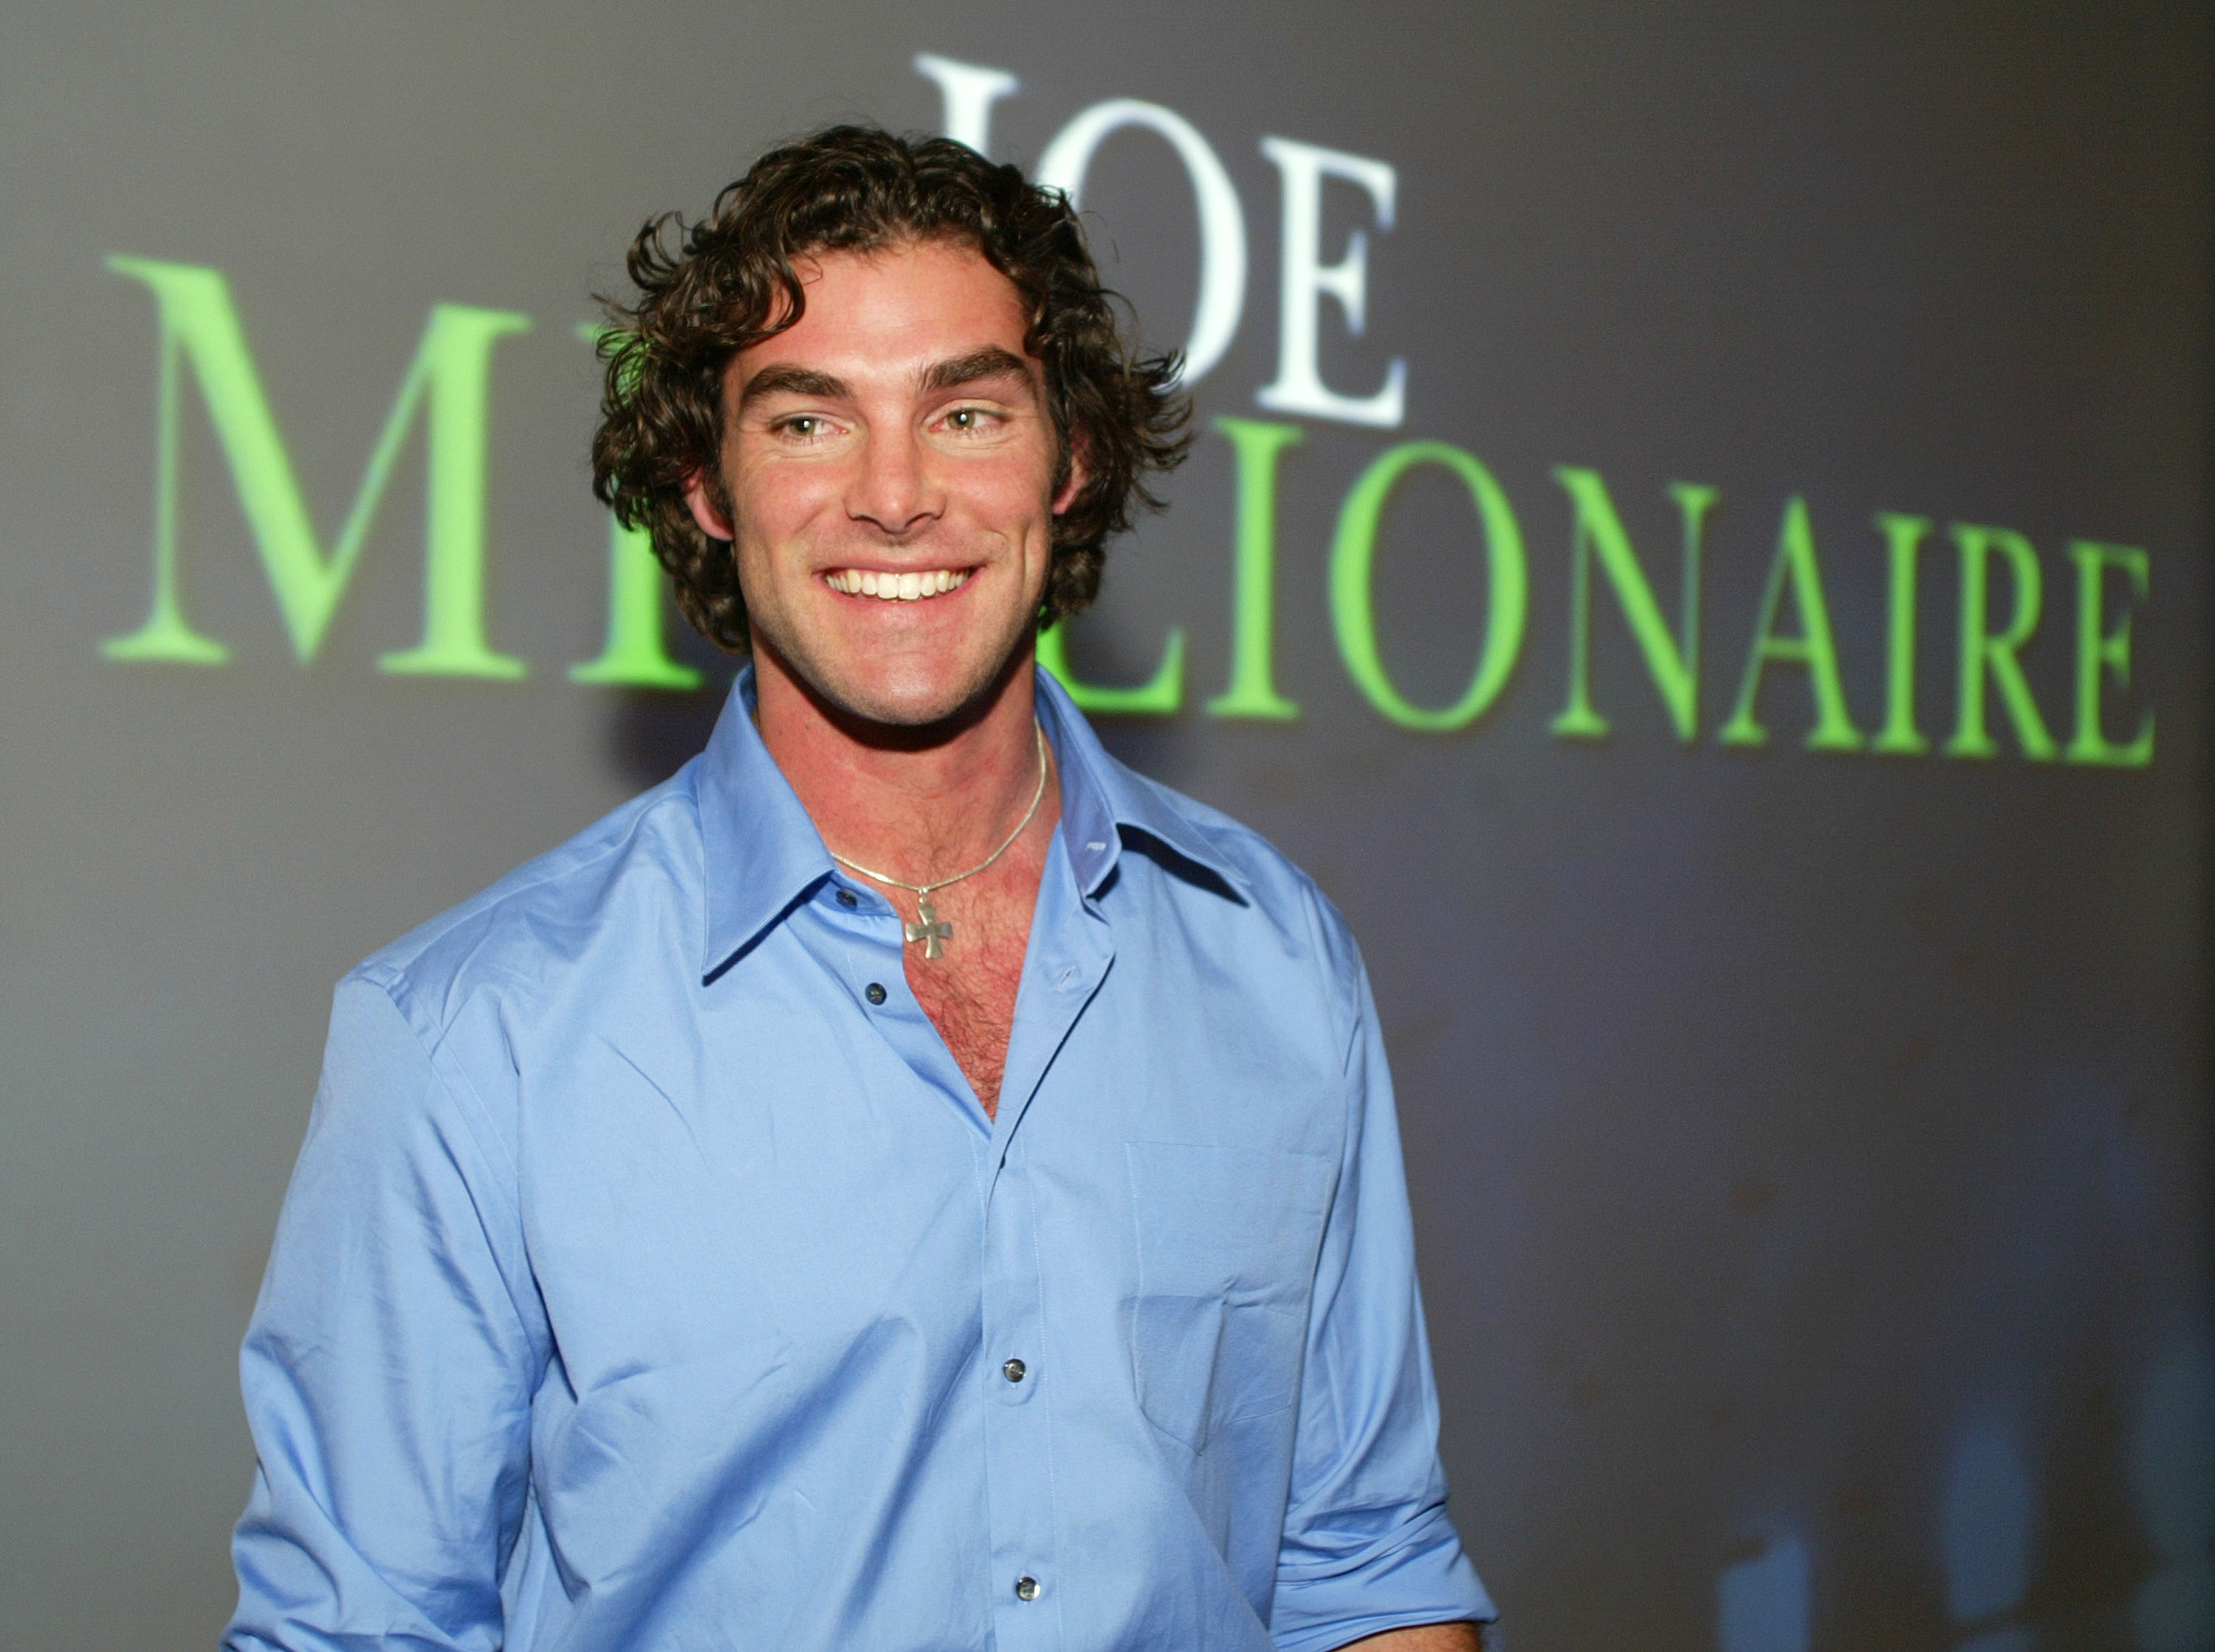 Evan Marriott standing in front of a 'Joe Millionaire' backdrop